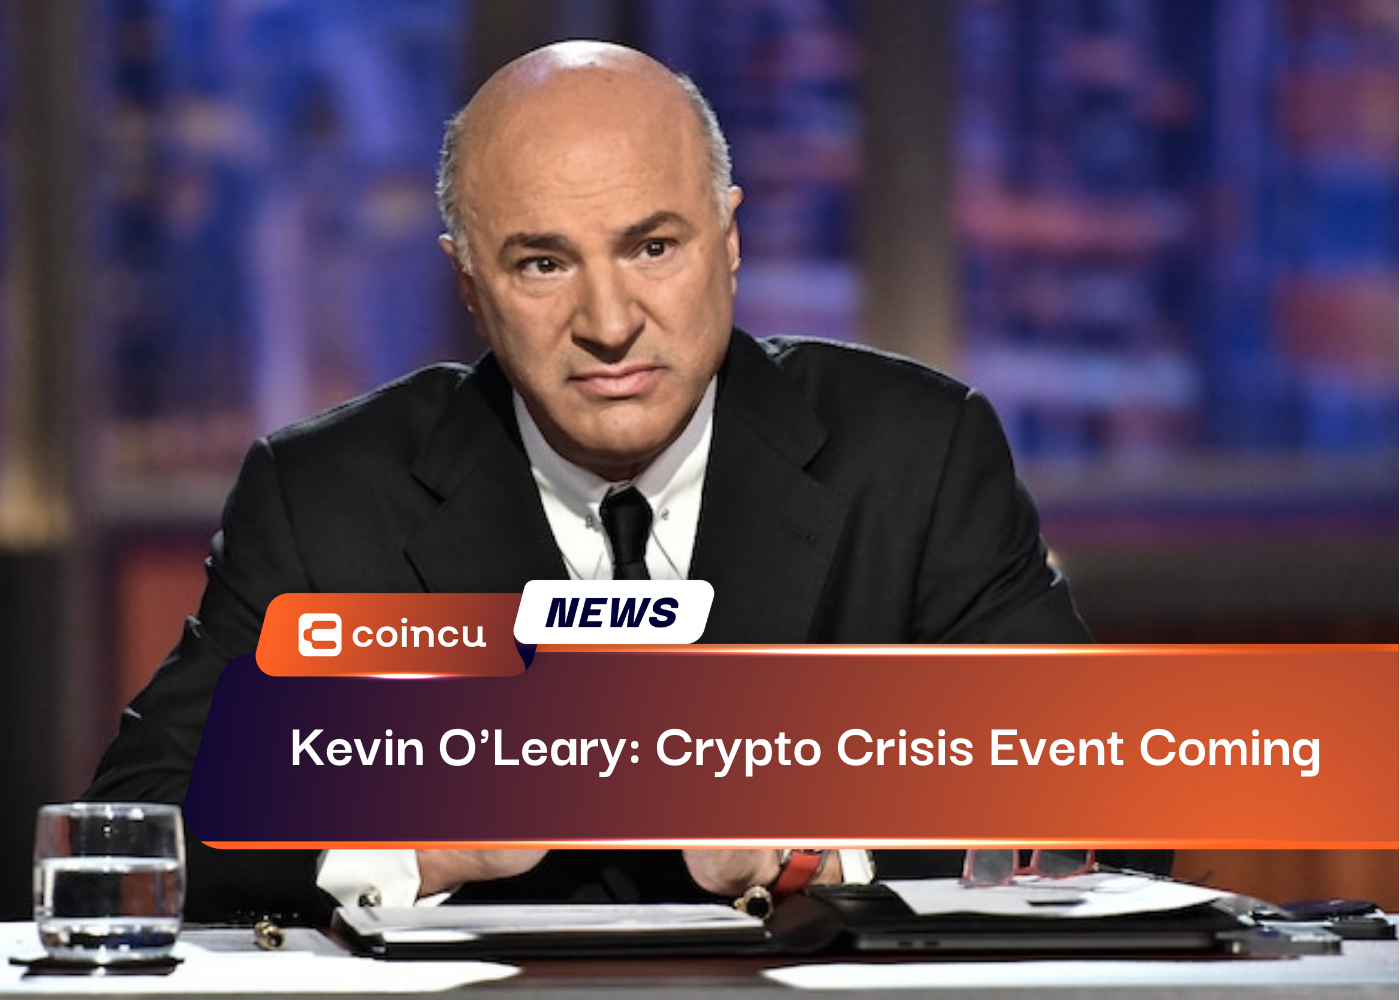 Kevin O'Leary: Kripto Krizi Etkinliği Geliyor